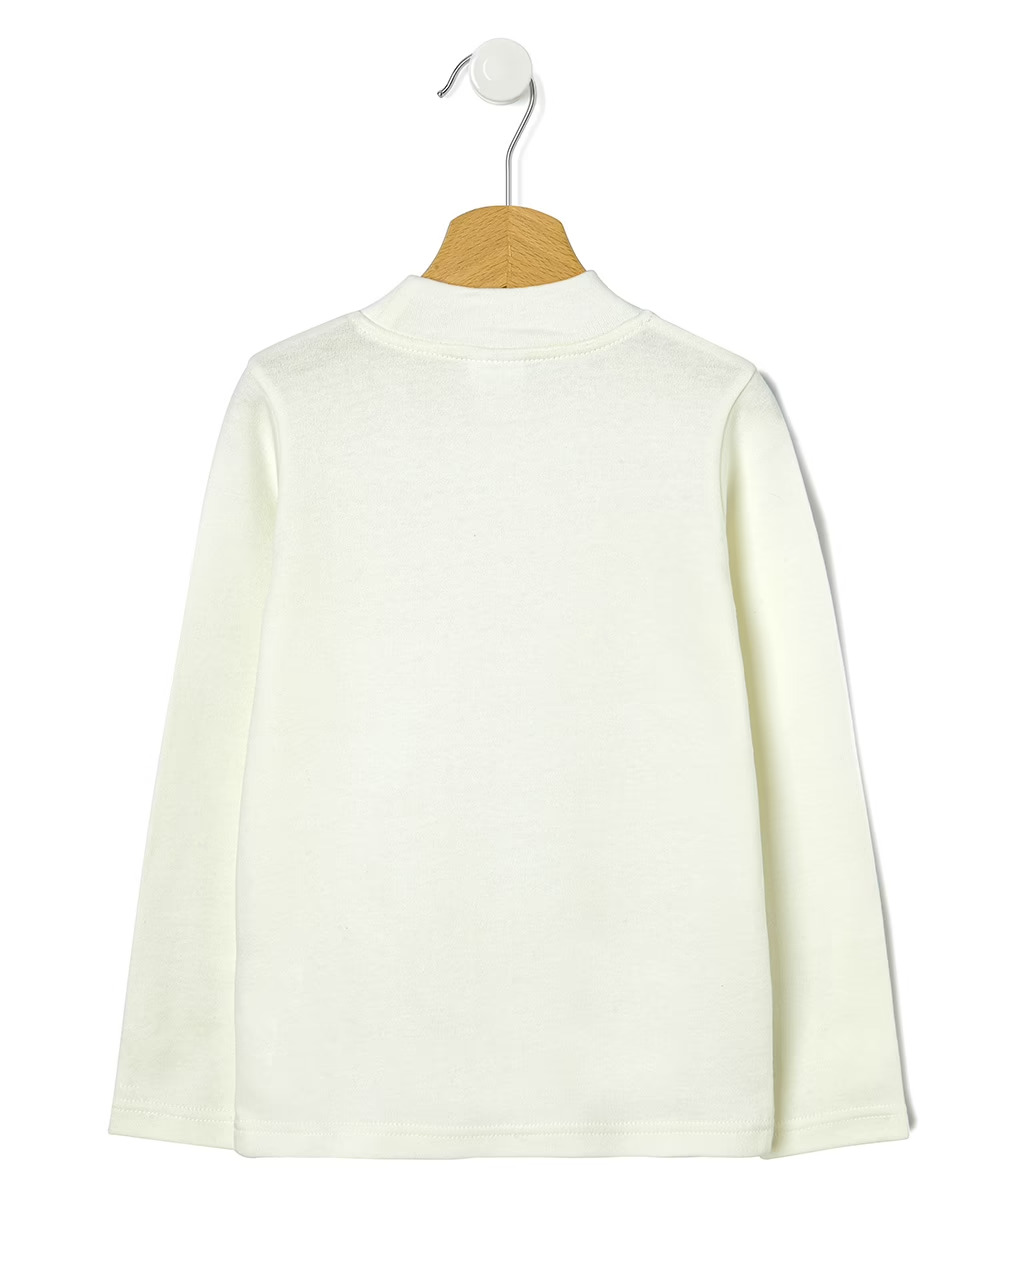 παιδική μπλούζα ζιβάγκο λευκή μεγ. 8-9/9-10 για αγόρι - Prénatal